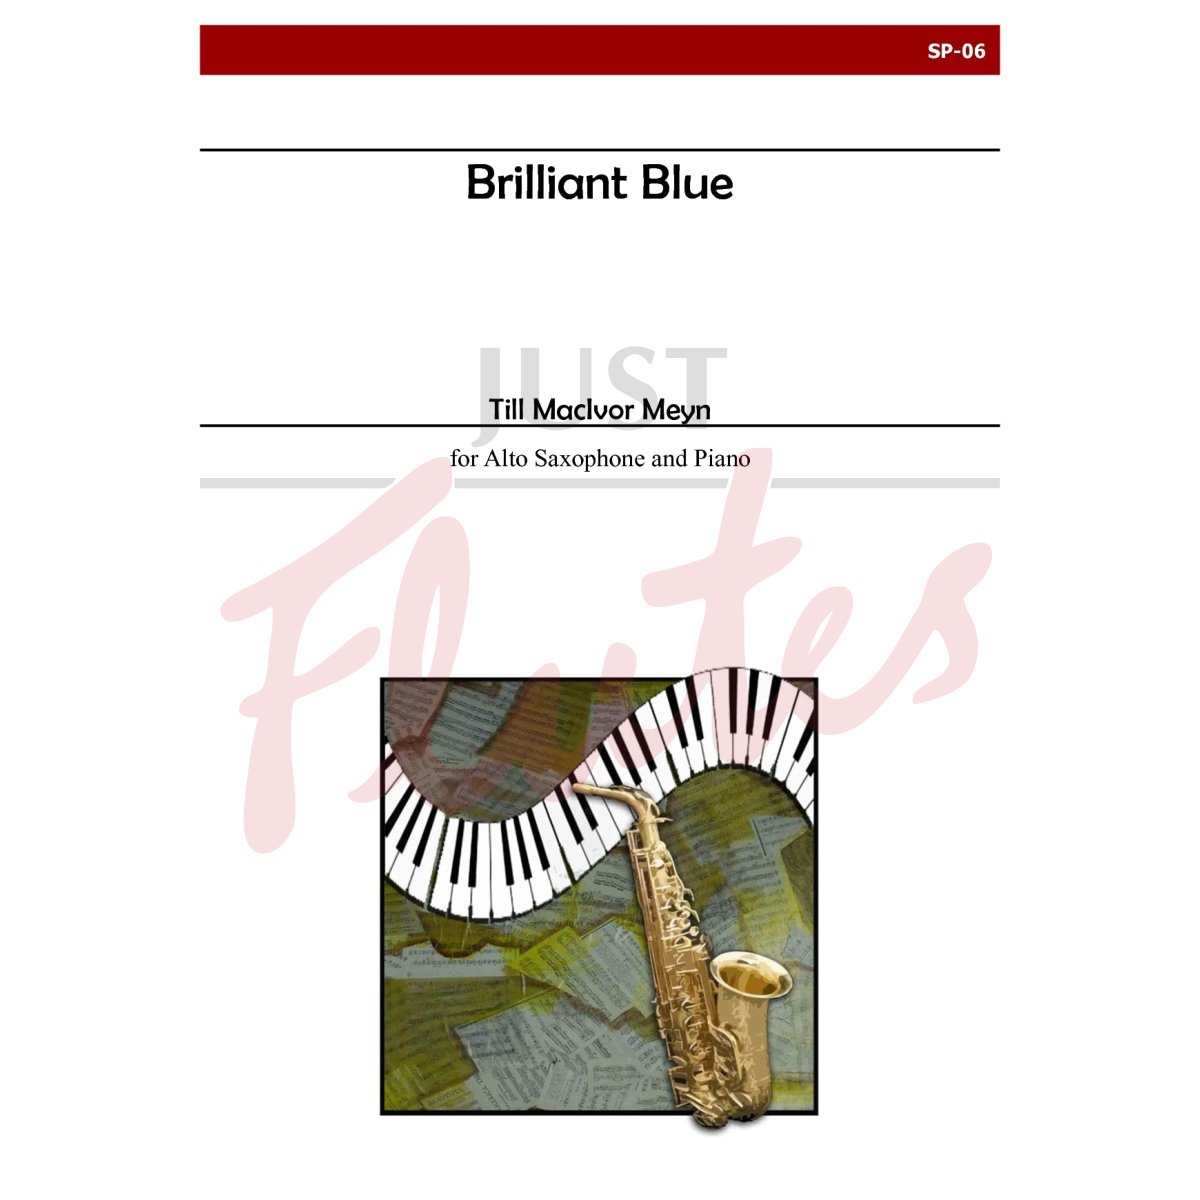 Brilliant Blue for Alto Saxophone and Piano